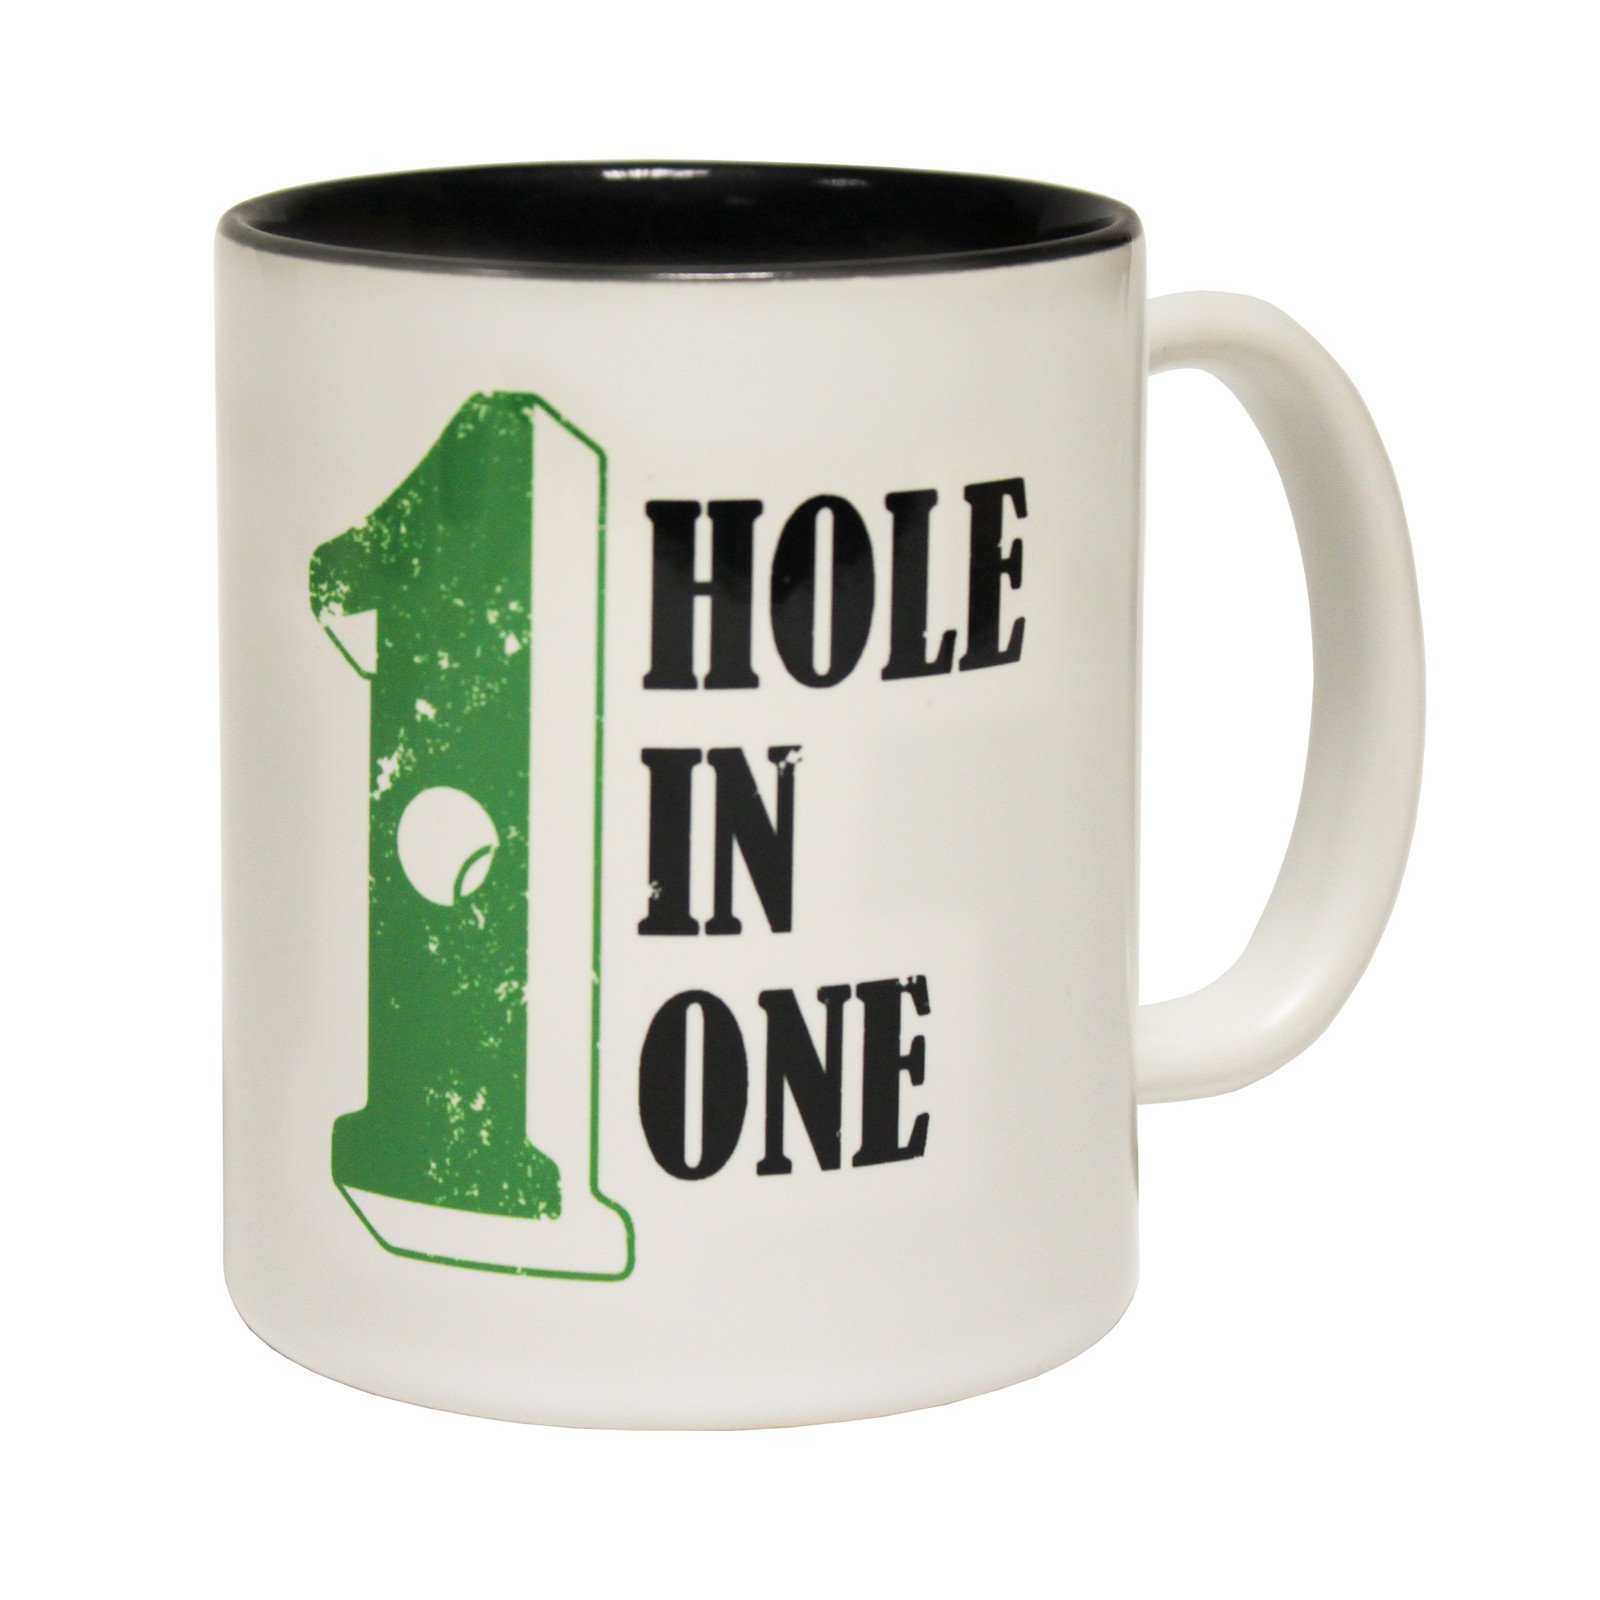 Hole In One Golf Tea Coffee Mug Novelty Golf Golfer Golfing funny ...